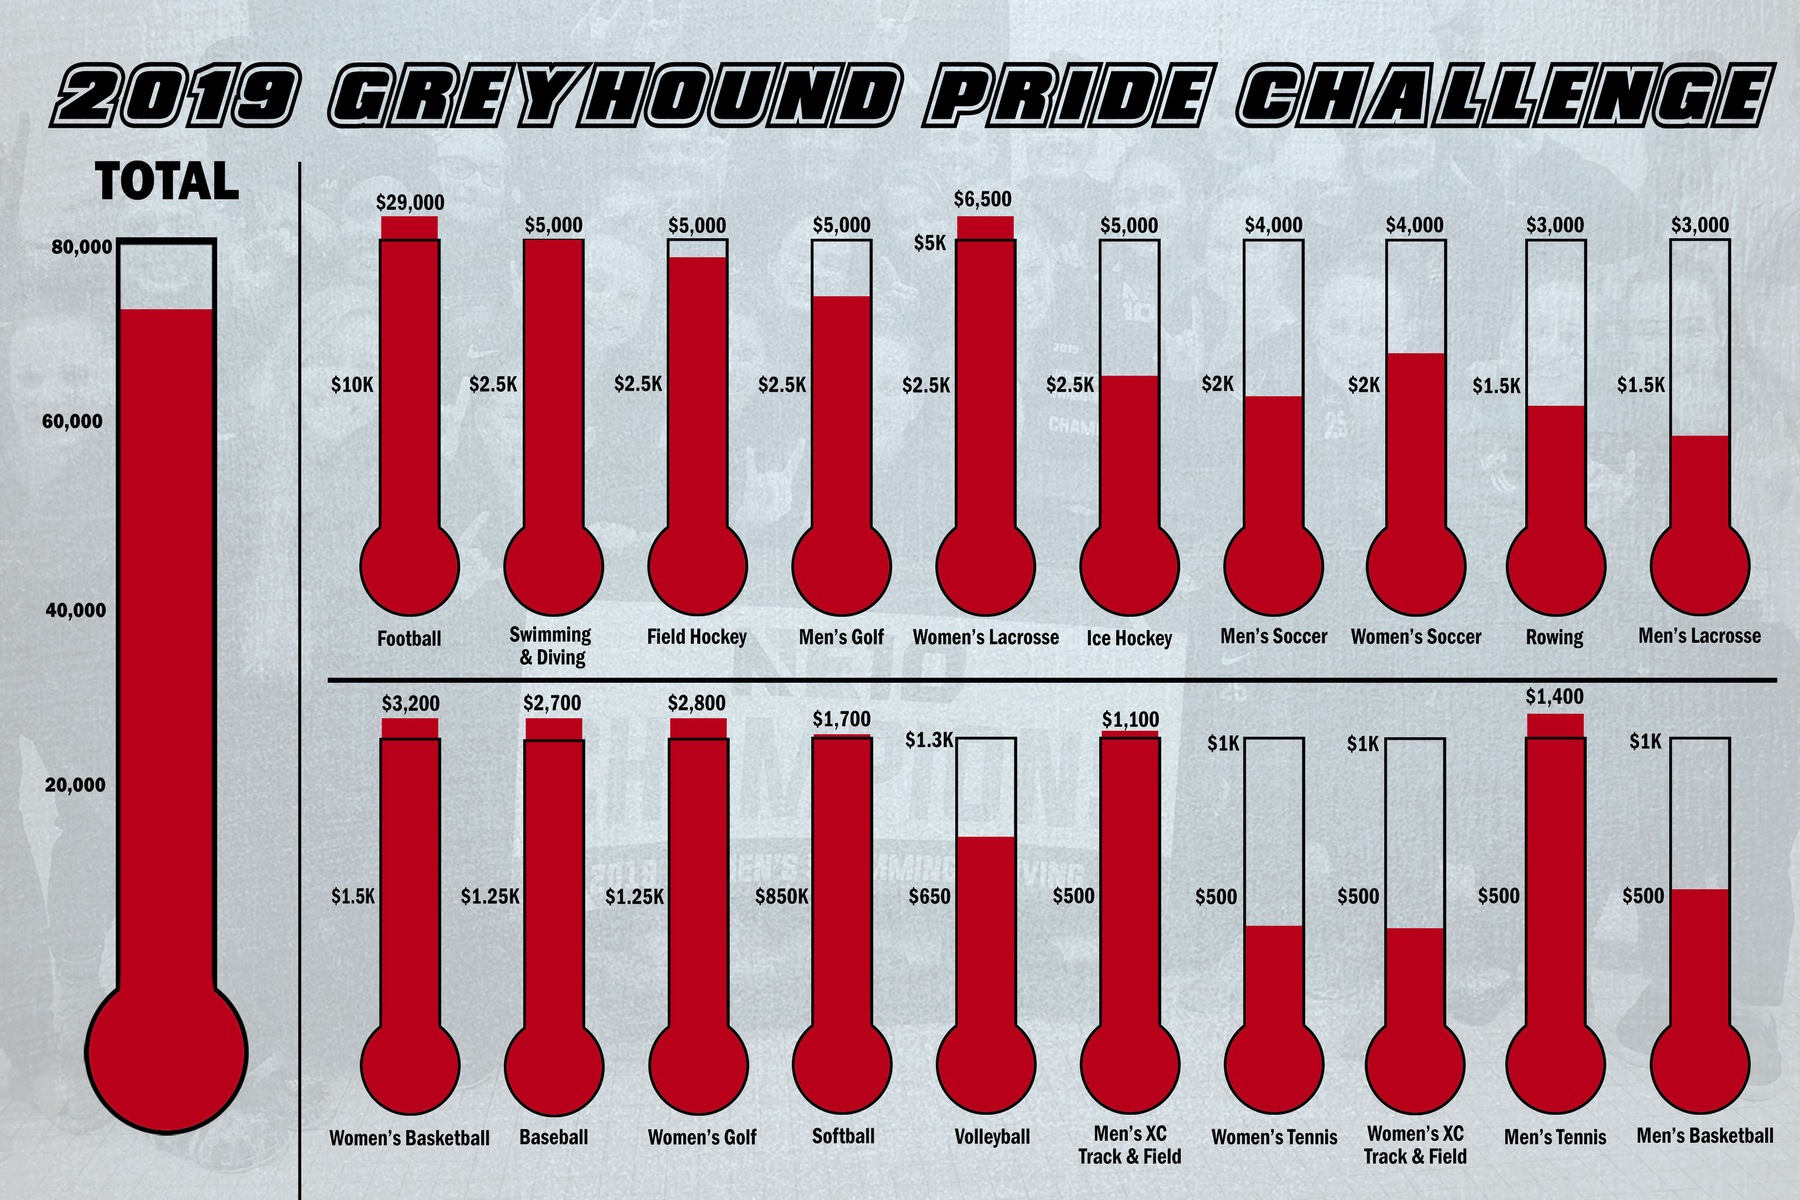 pride challenge totals